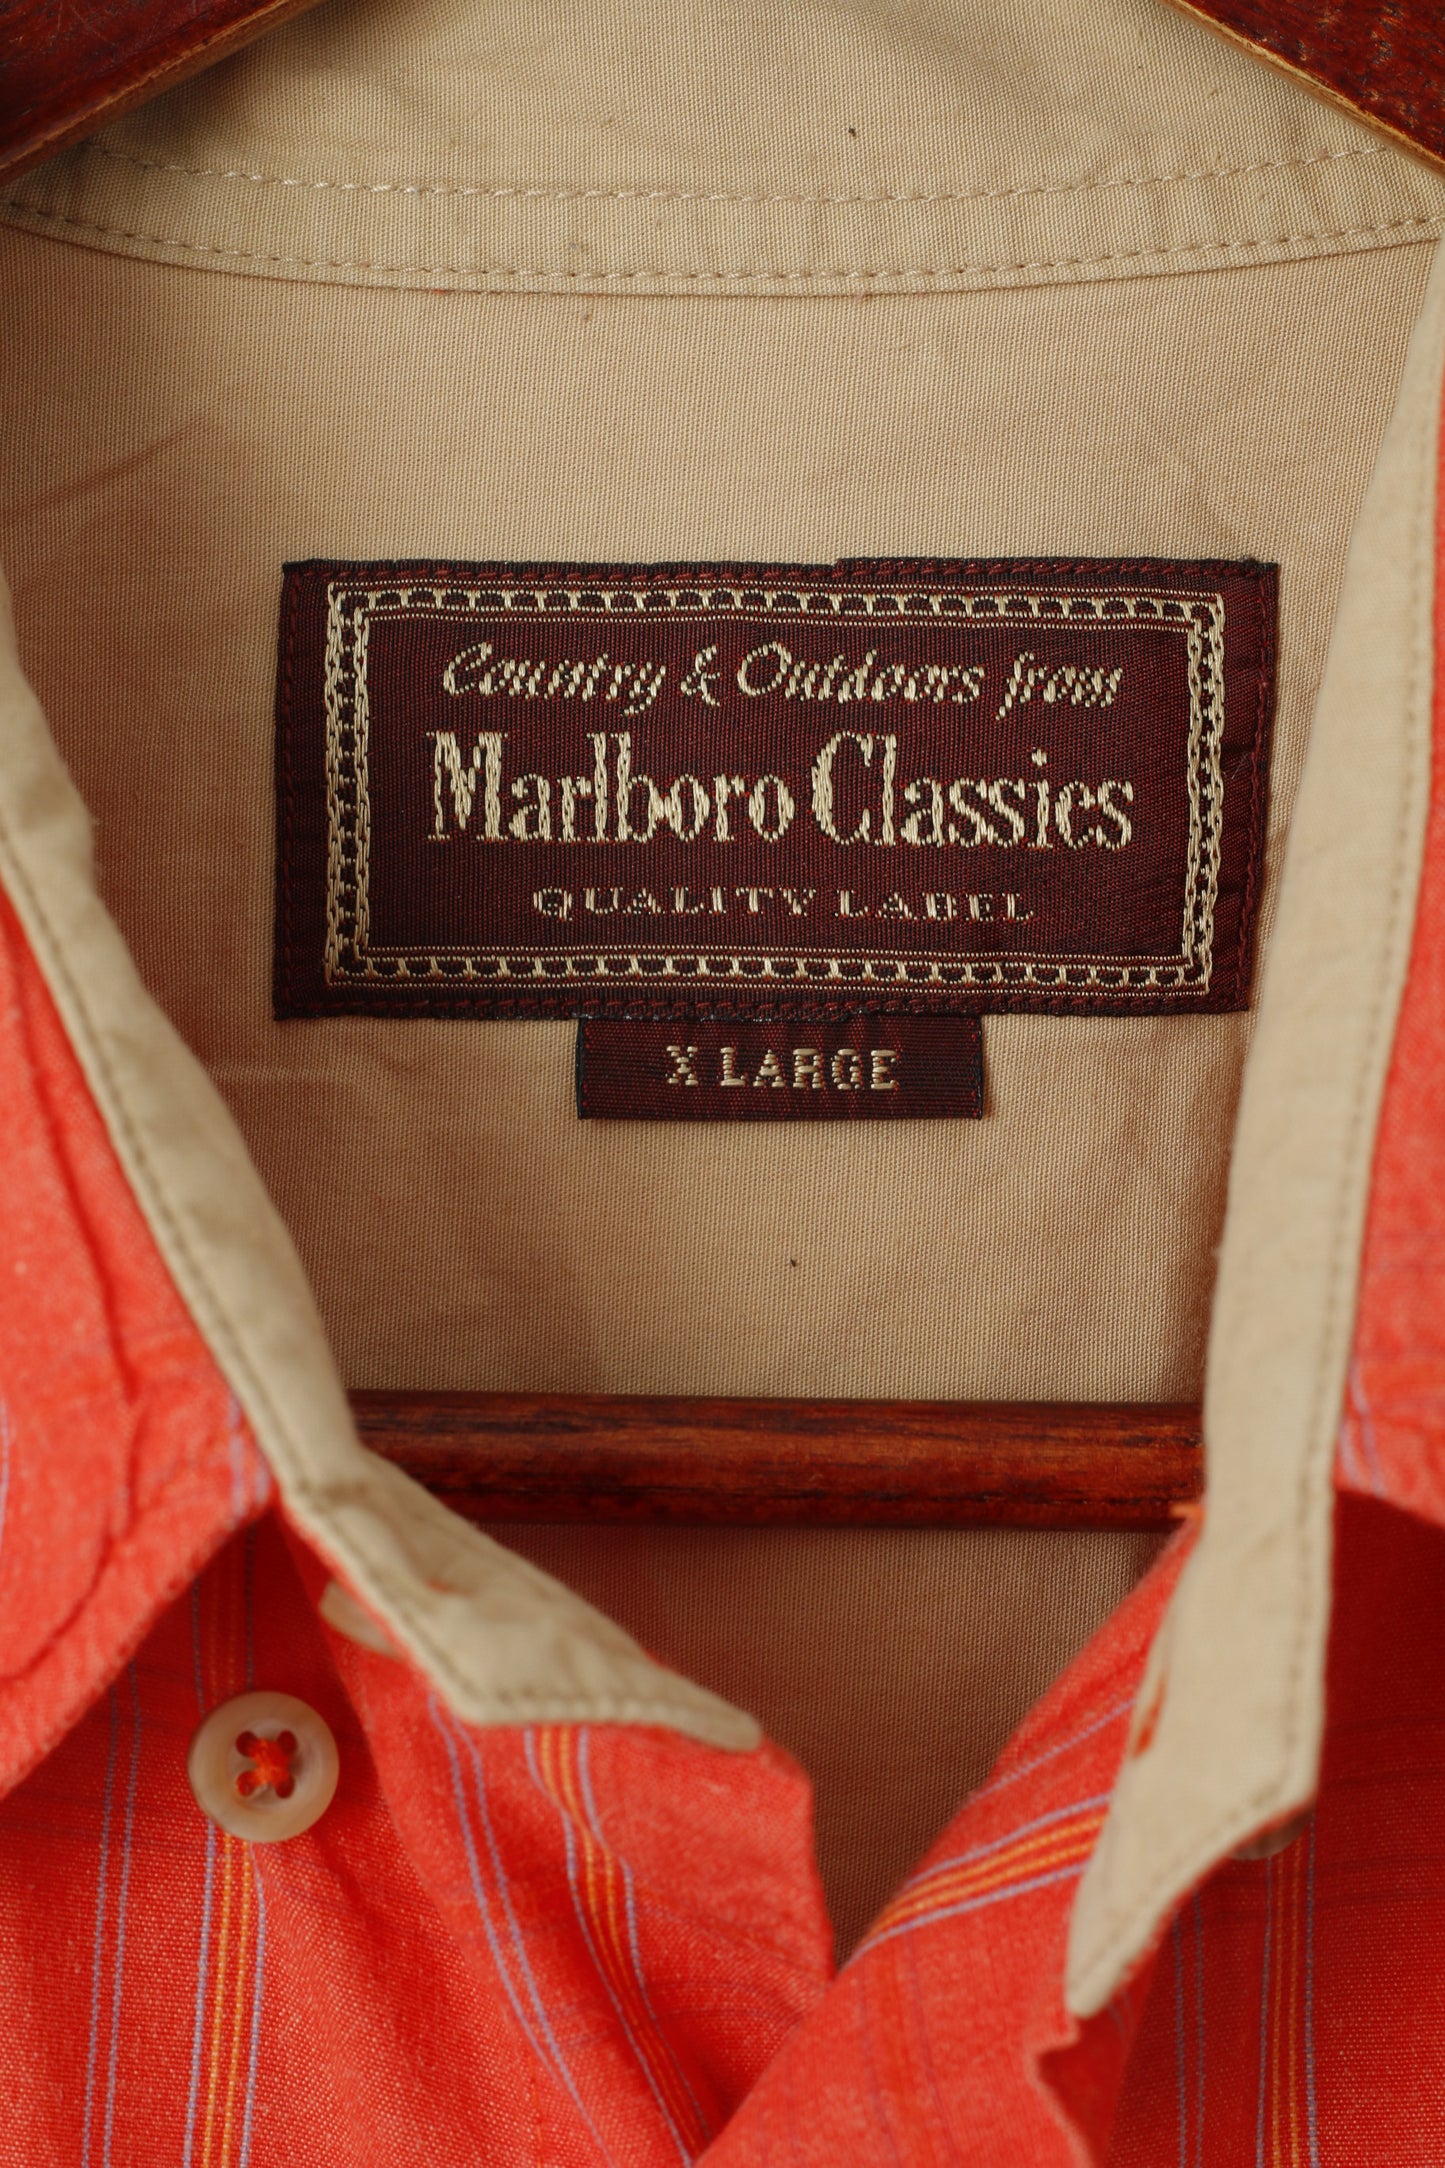 Marlboro Classics Camicia casual da uomo XL Top manica corta da esterno country a quadri arancione